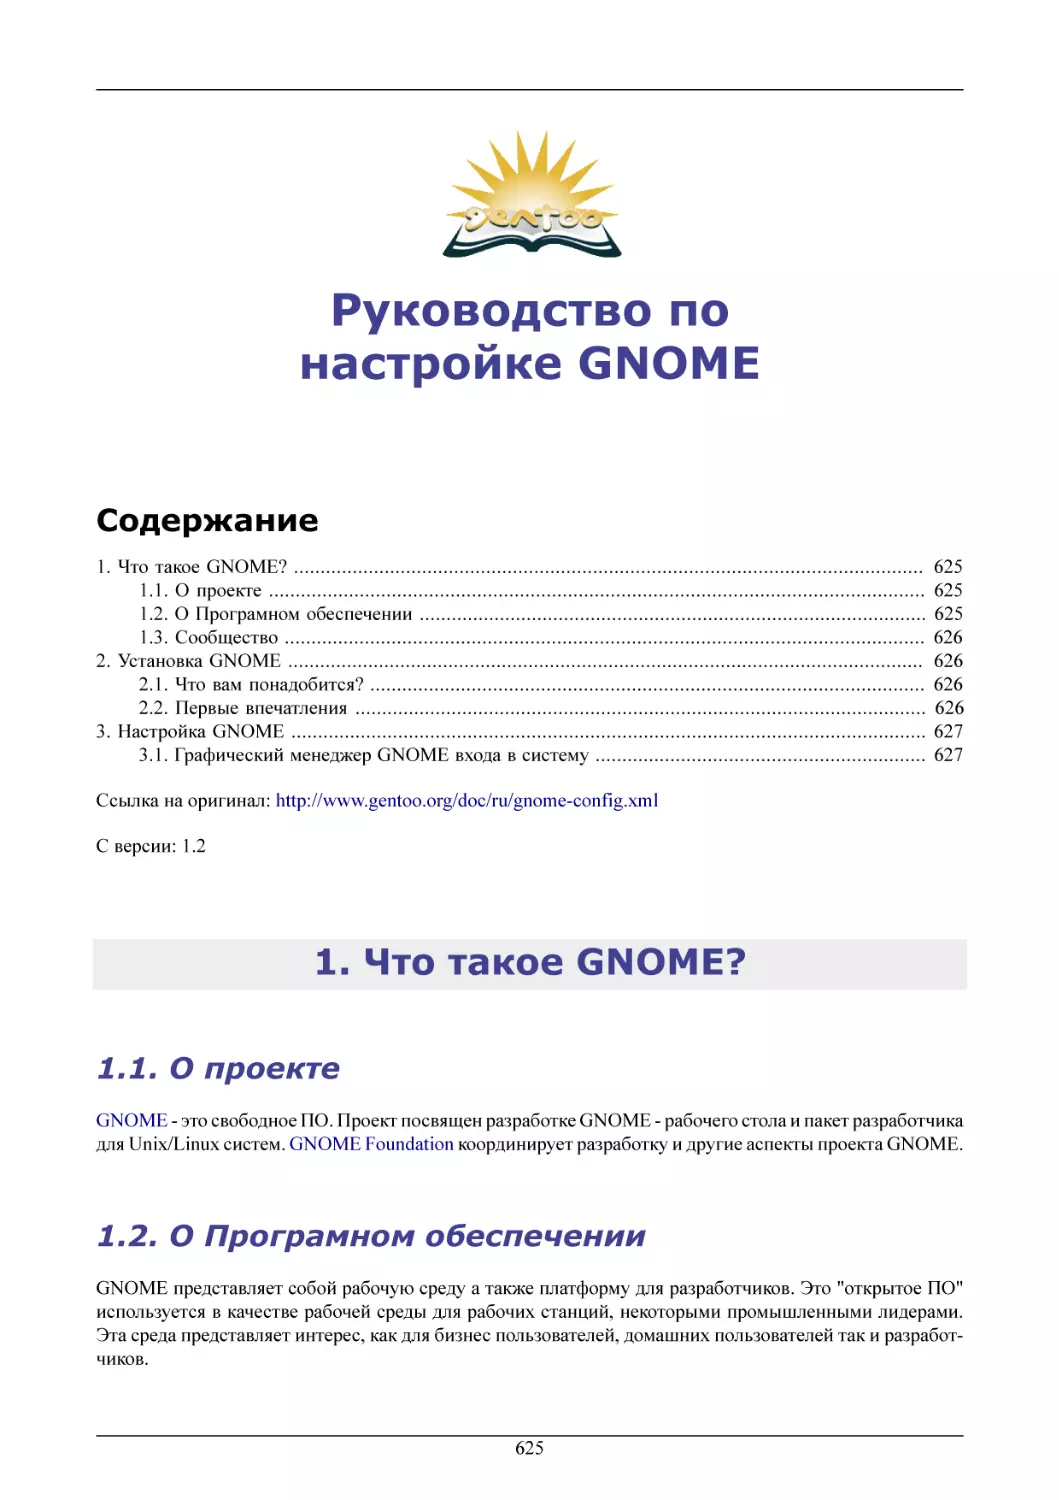 Руководство по настройке GNOME
Что такое GNOME?
О проекте
О Програмном обеспечении